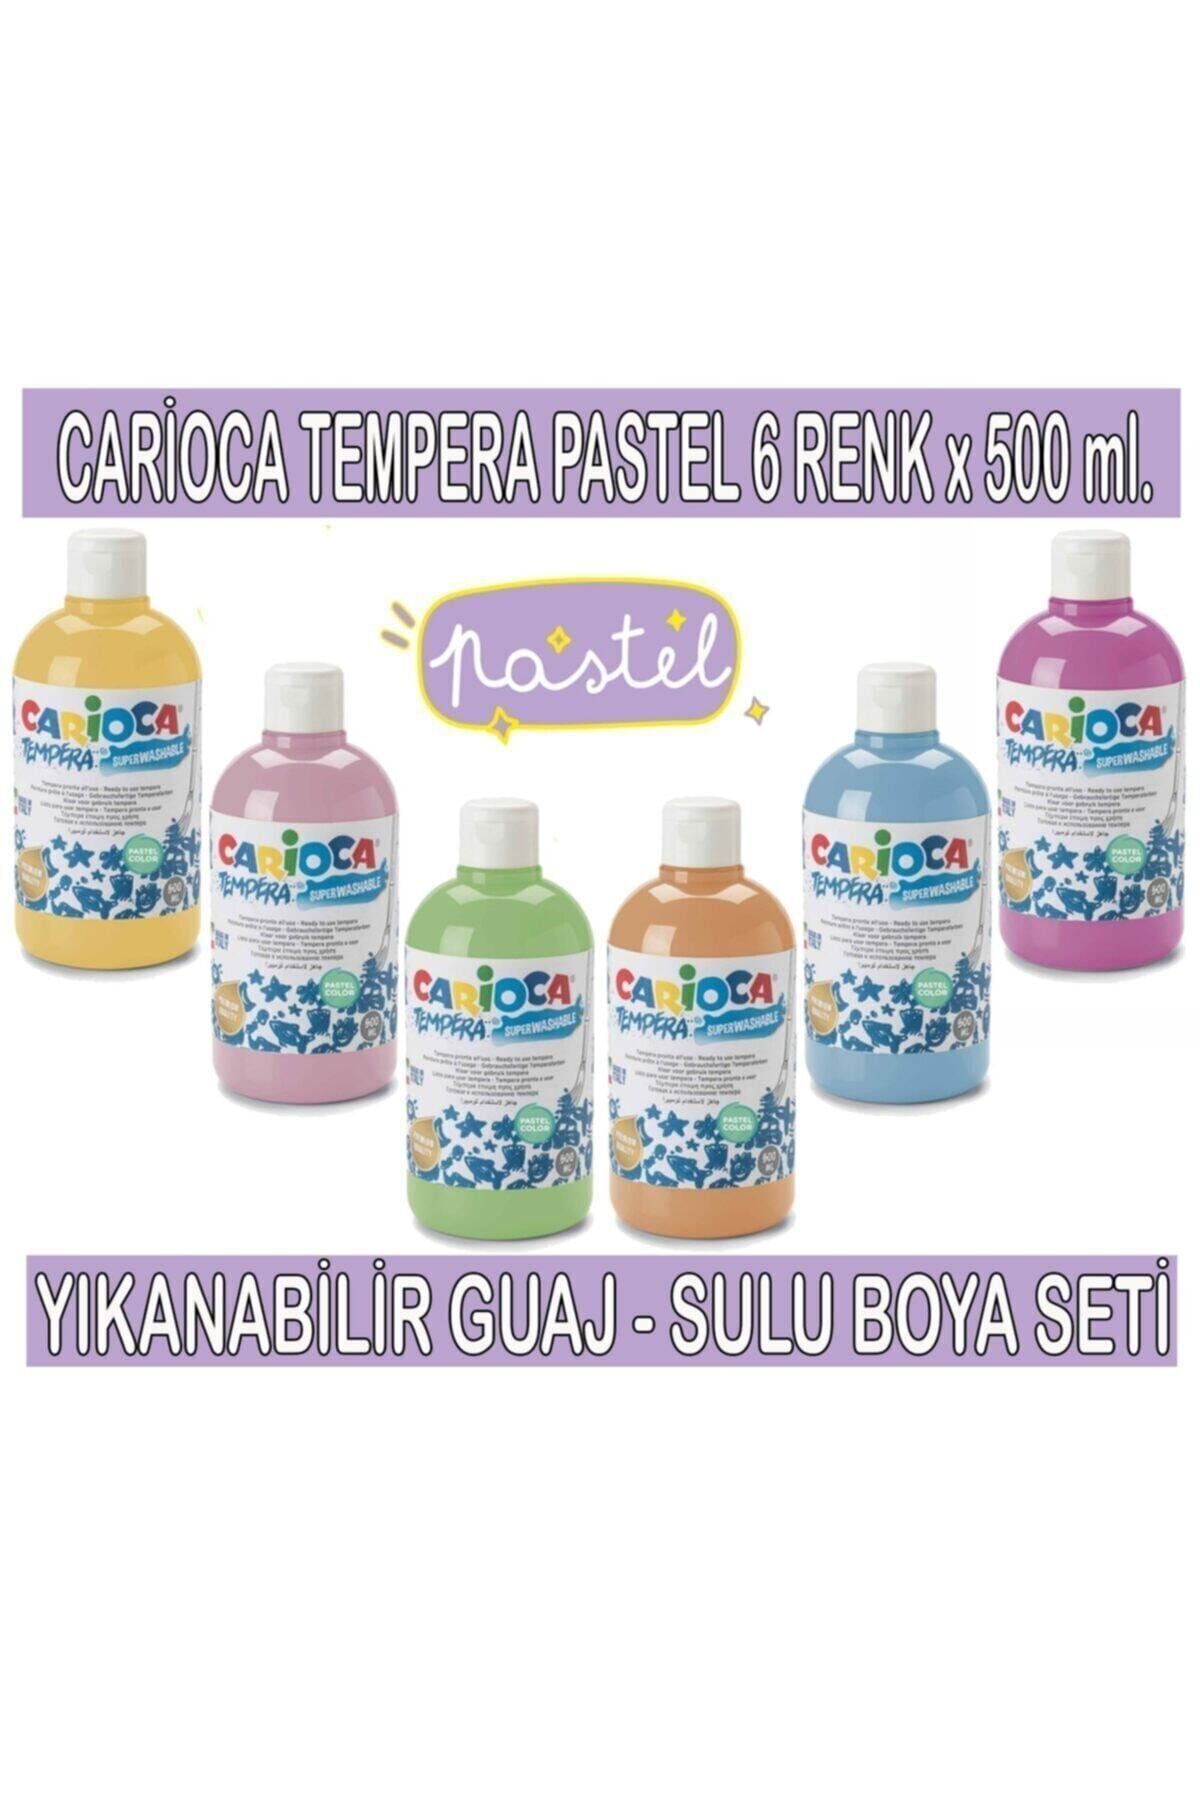 Carioca Tempera Pastel Renkler Yıkanabilir Sulu Boya Seti 6 Renk X 500 ml.